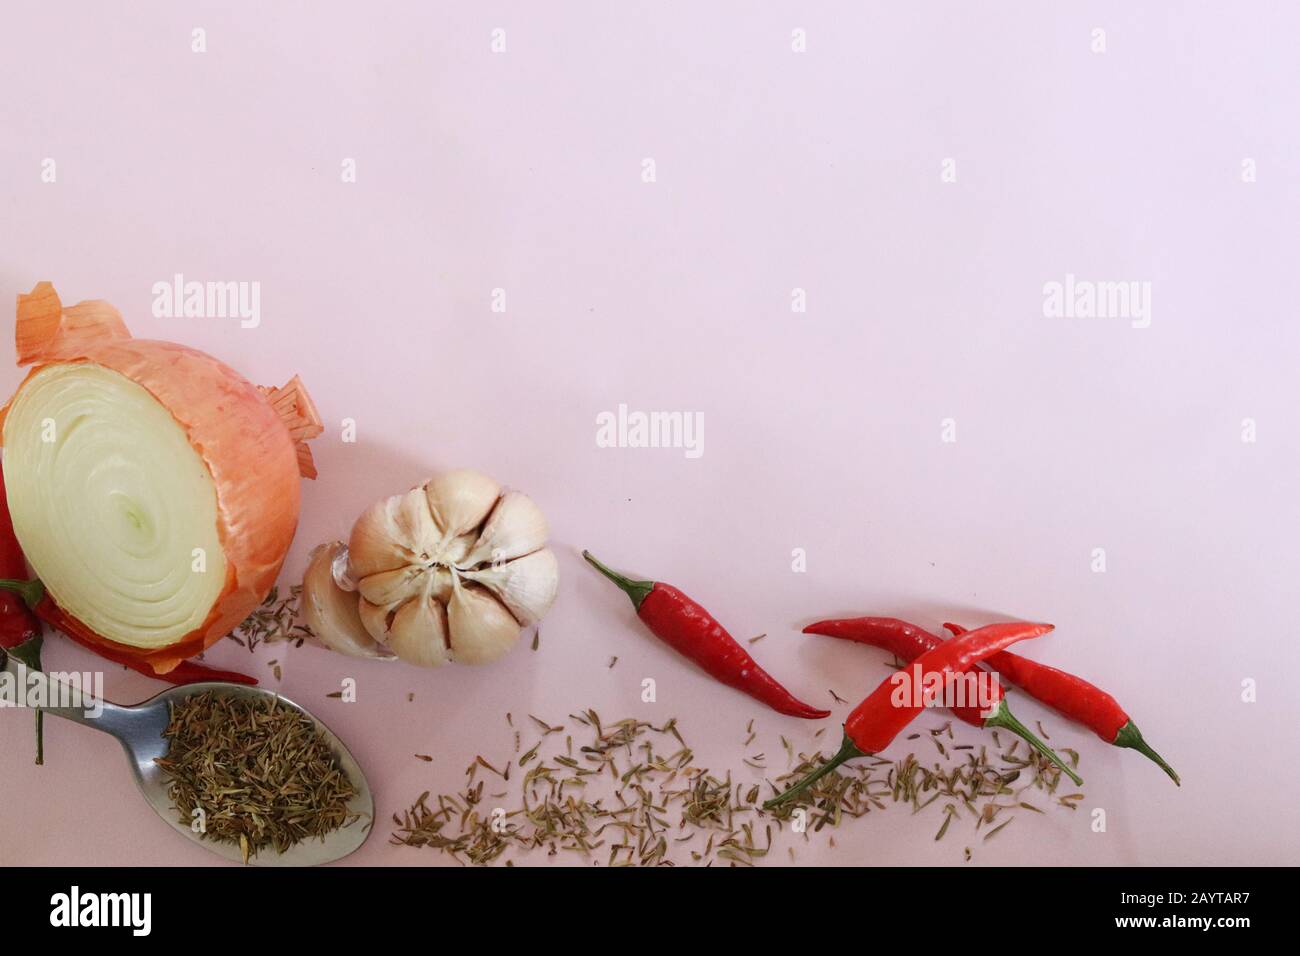 Erbe e spezie per cucinare su uno sfondo rosa per mostrare il concetto di gastronomia, cucina, cucina, preparazione alimentare e sapori Foto Stock